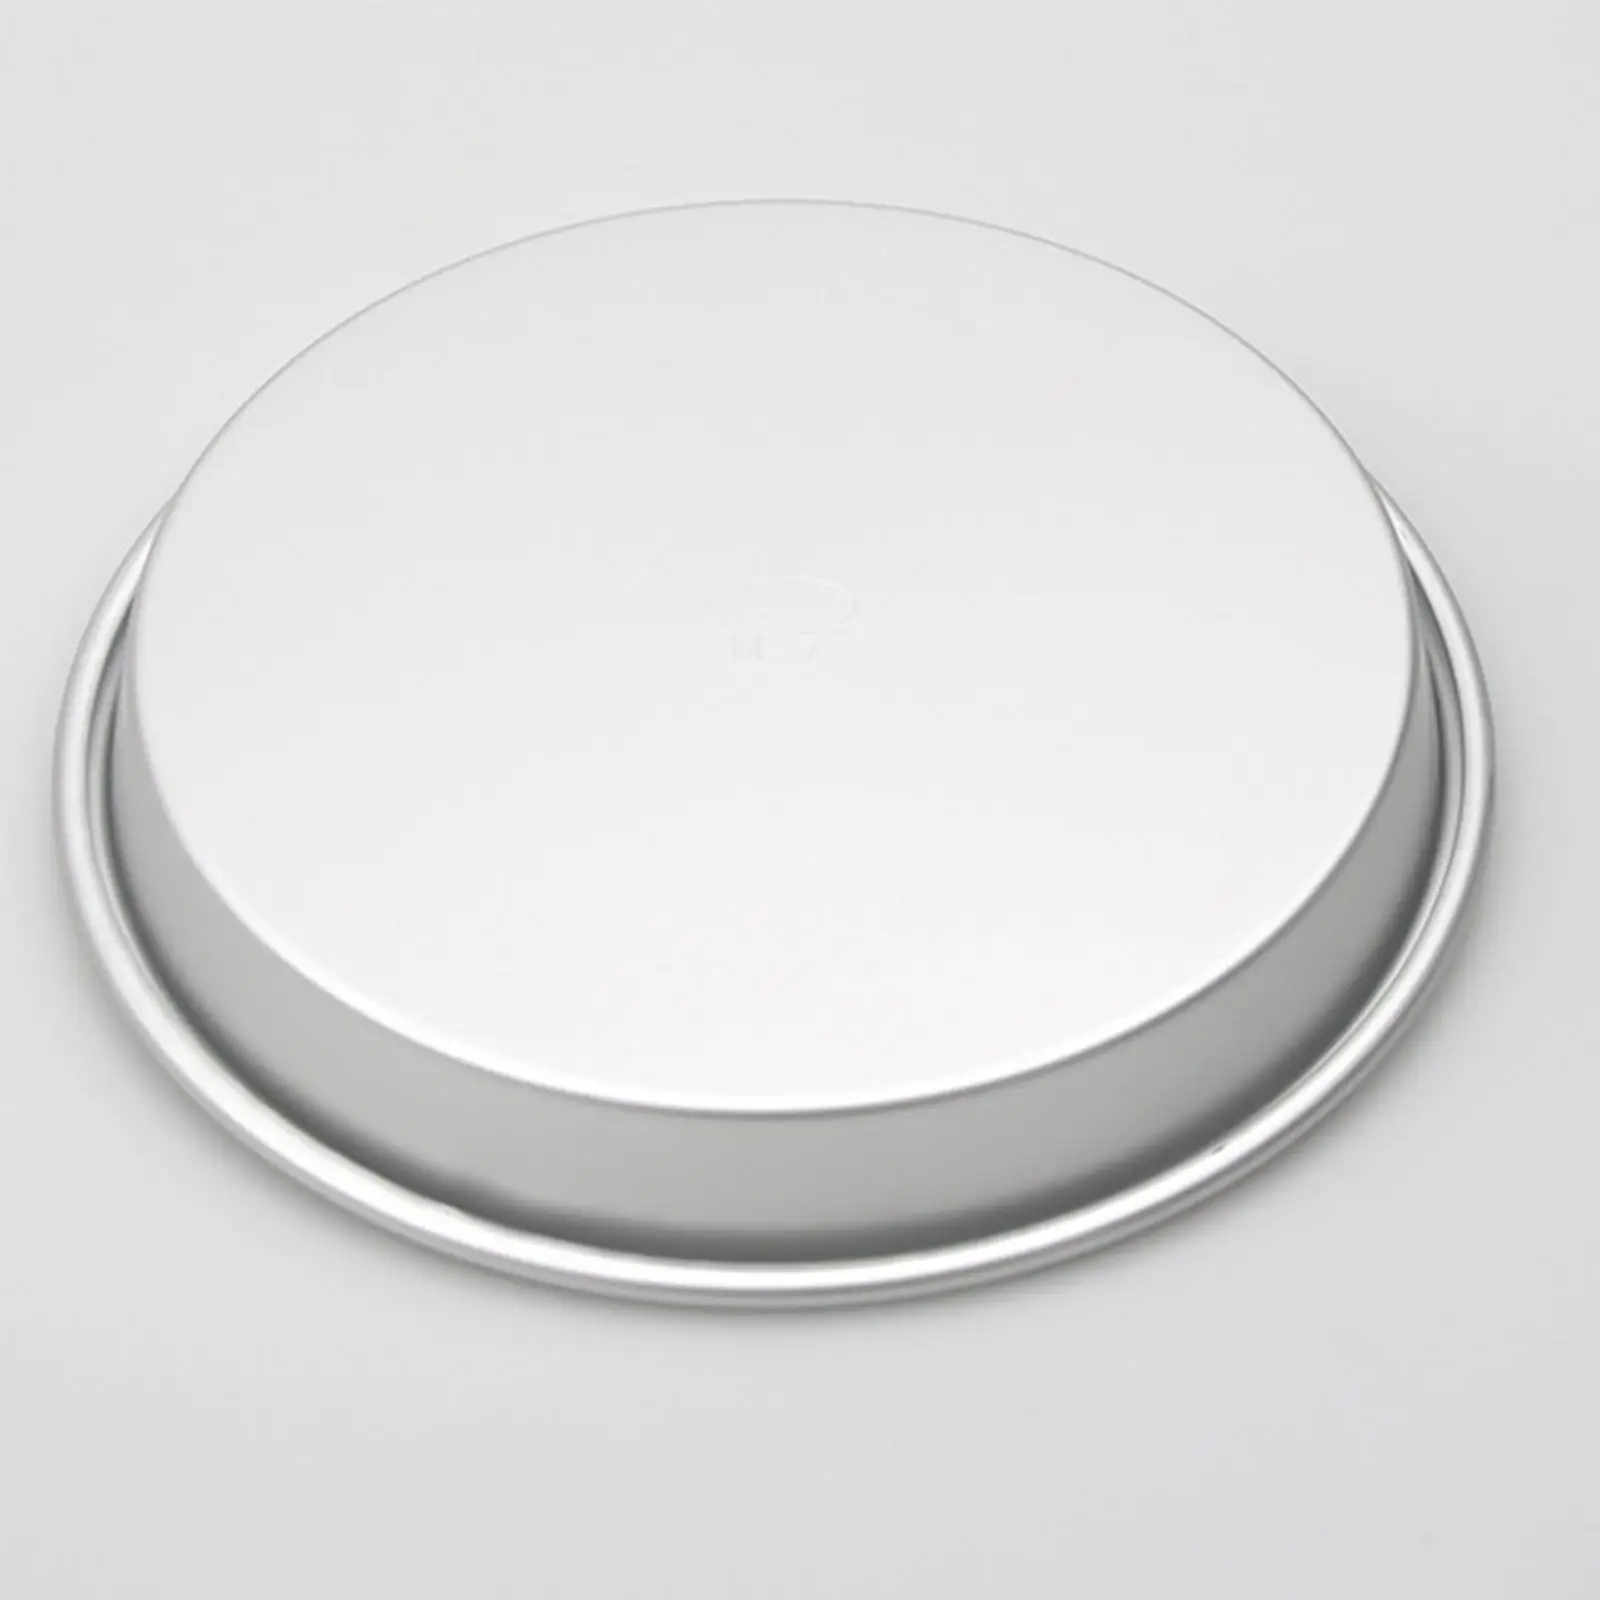 Походная тарелка из алюминиевого сплава 8 дюймов Портативная легкая металлическая обеденная тарелка Посуда для пикника барбекю путешествий походов на открытом воздухе